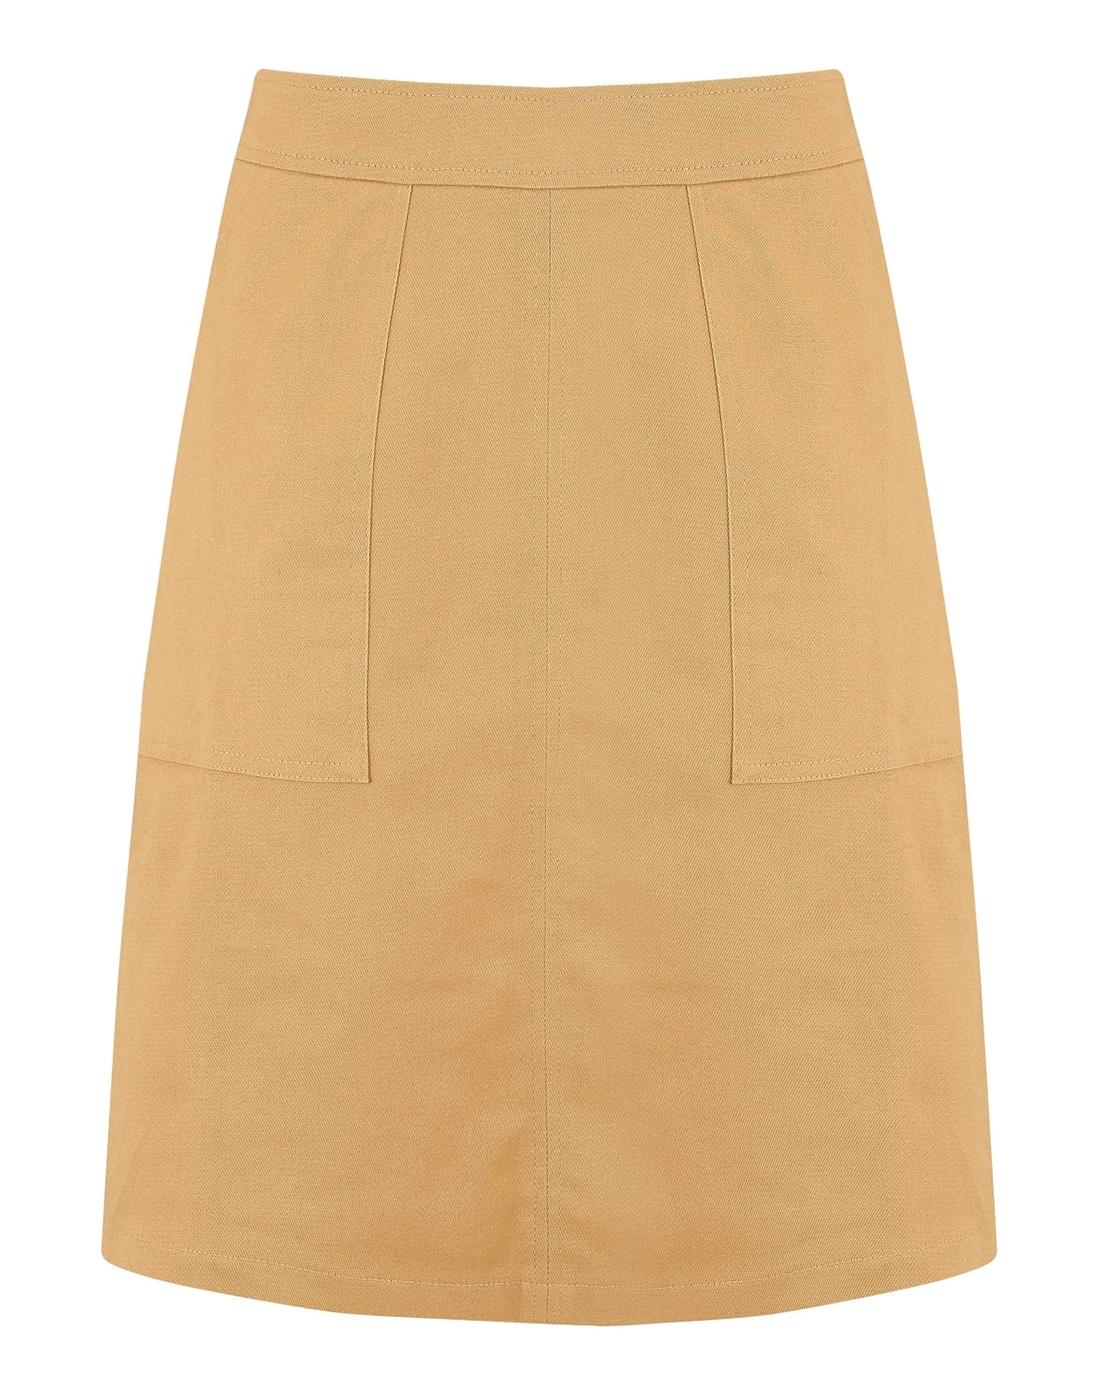 Daria SUGARHILL BOUTIQUE Retro Mod A-Line Skirt